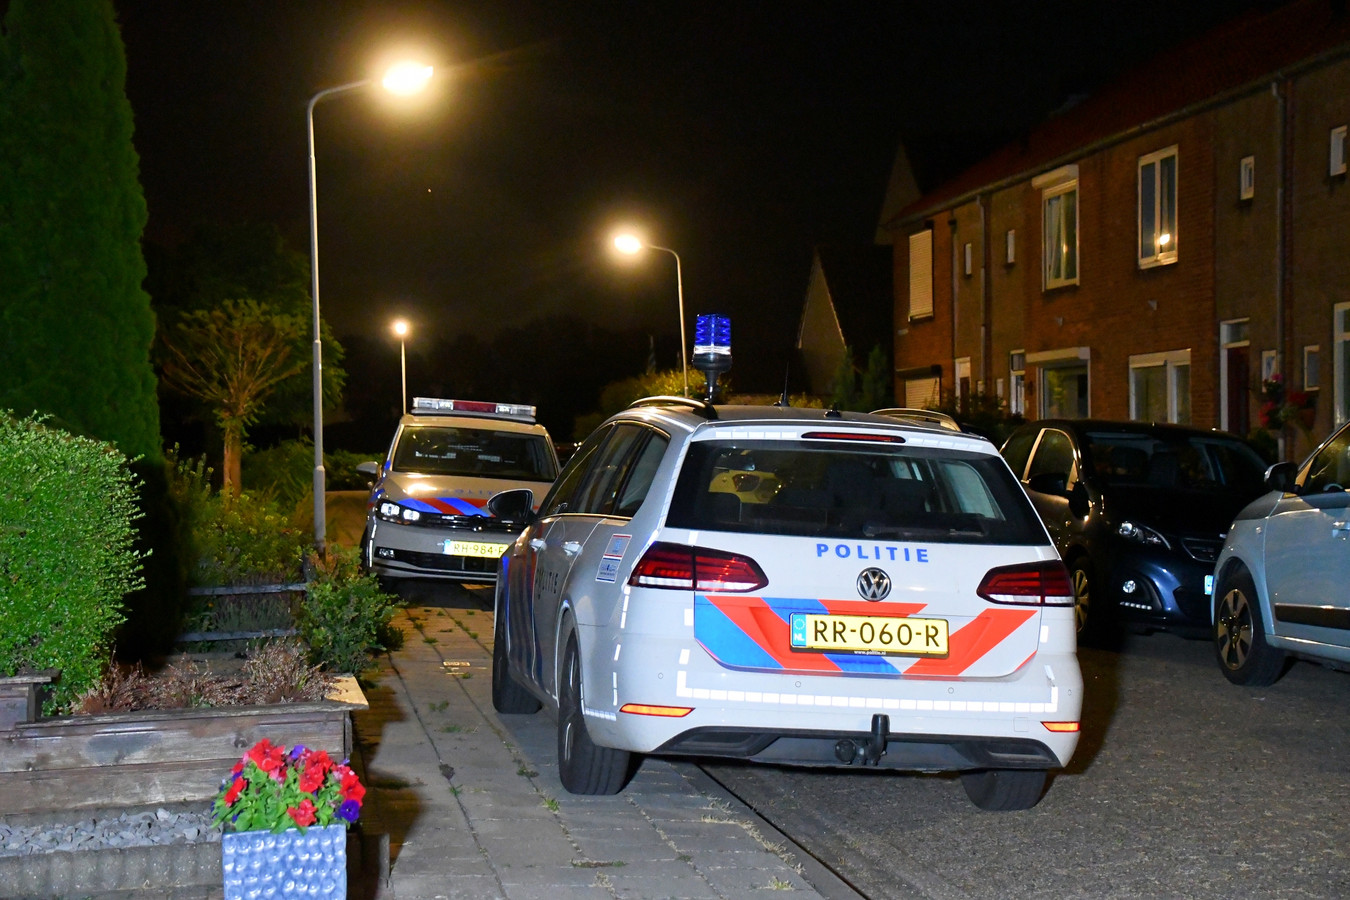 In de Marijkestraat in Hoek is afgelopen nacht iemand gewond geraakt toen hij beroofd werd van zijn telefoon.